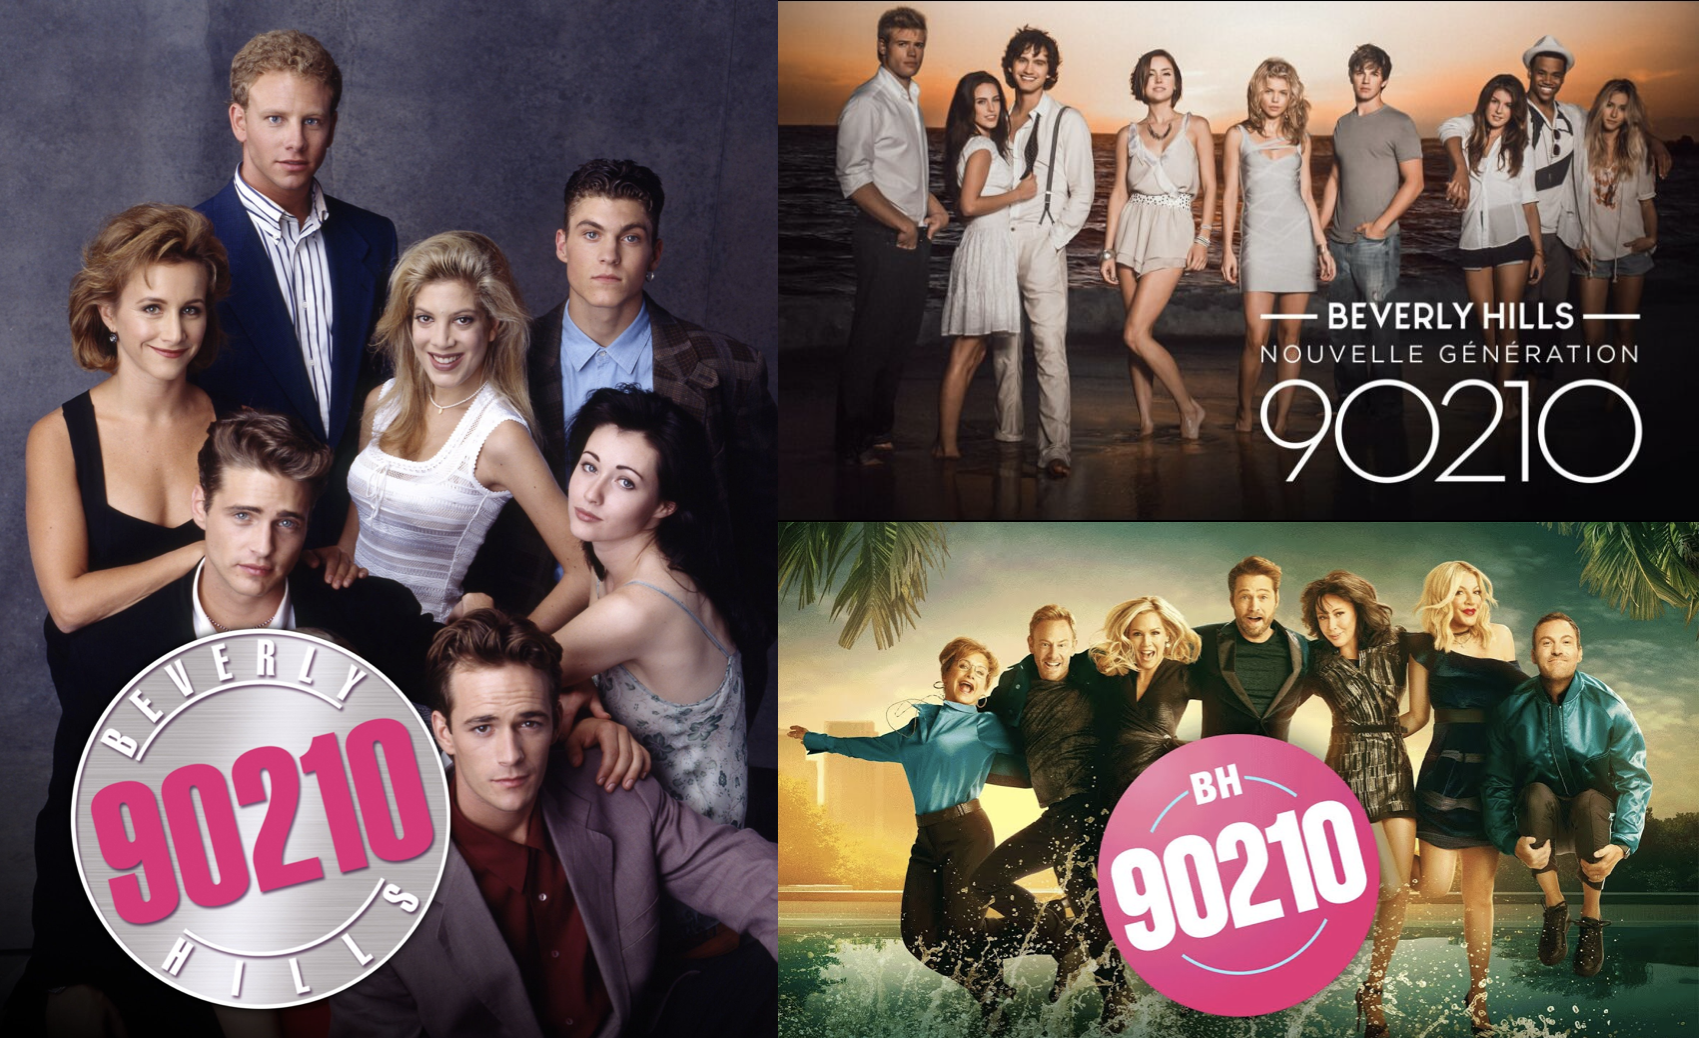 Affiches promotionnelles de Beverly Hills, 90210 et BH90210.